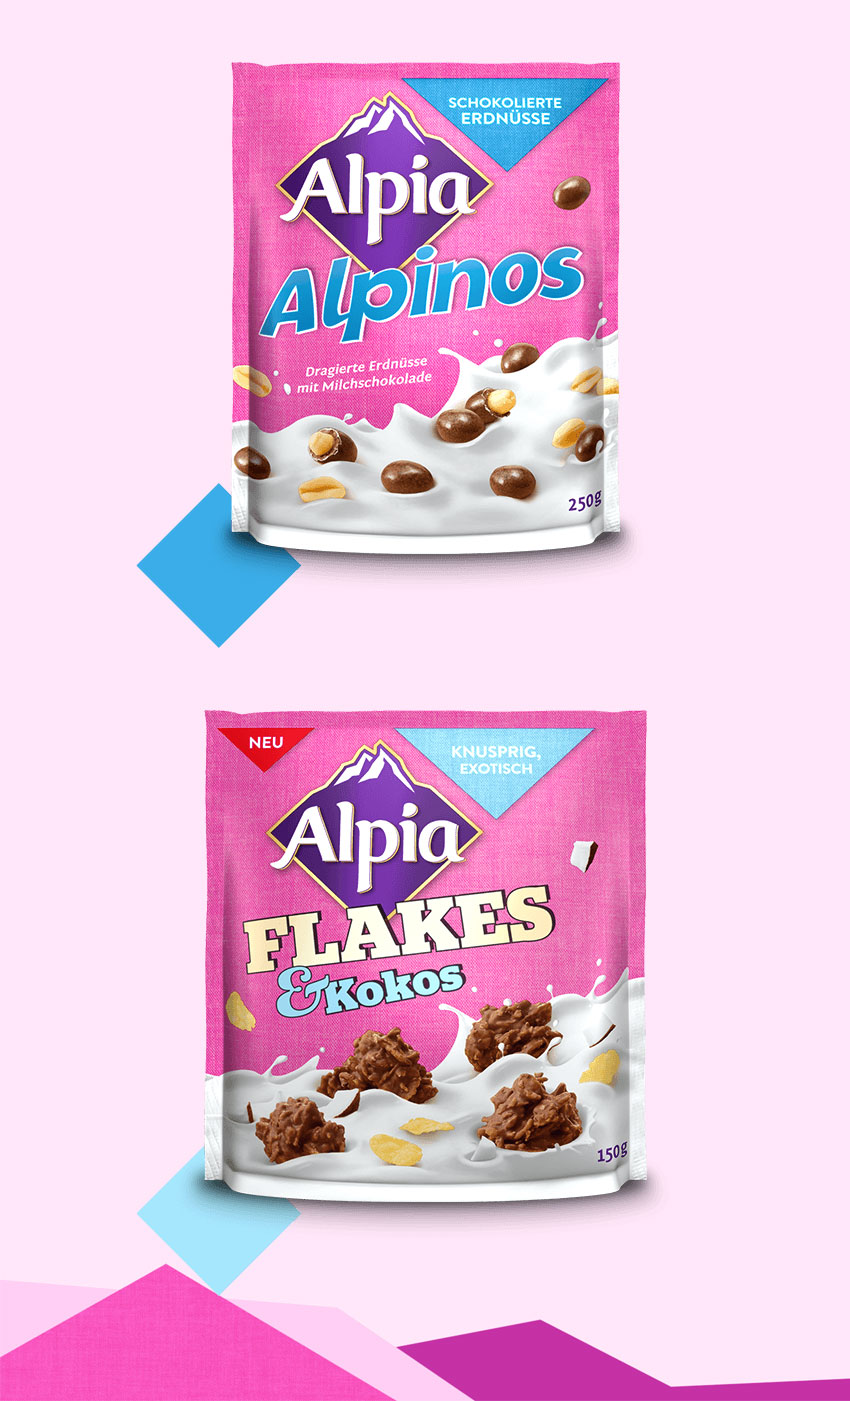 德國巧克力品牌 Alpia（歐派）啟用新LOGO